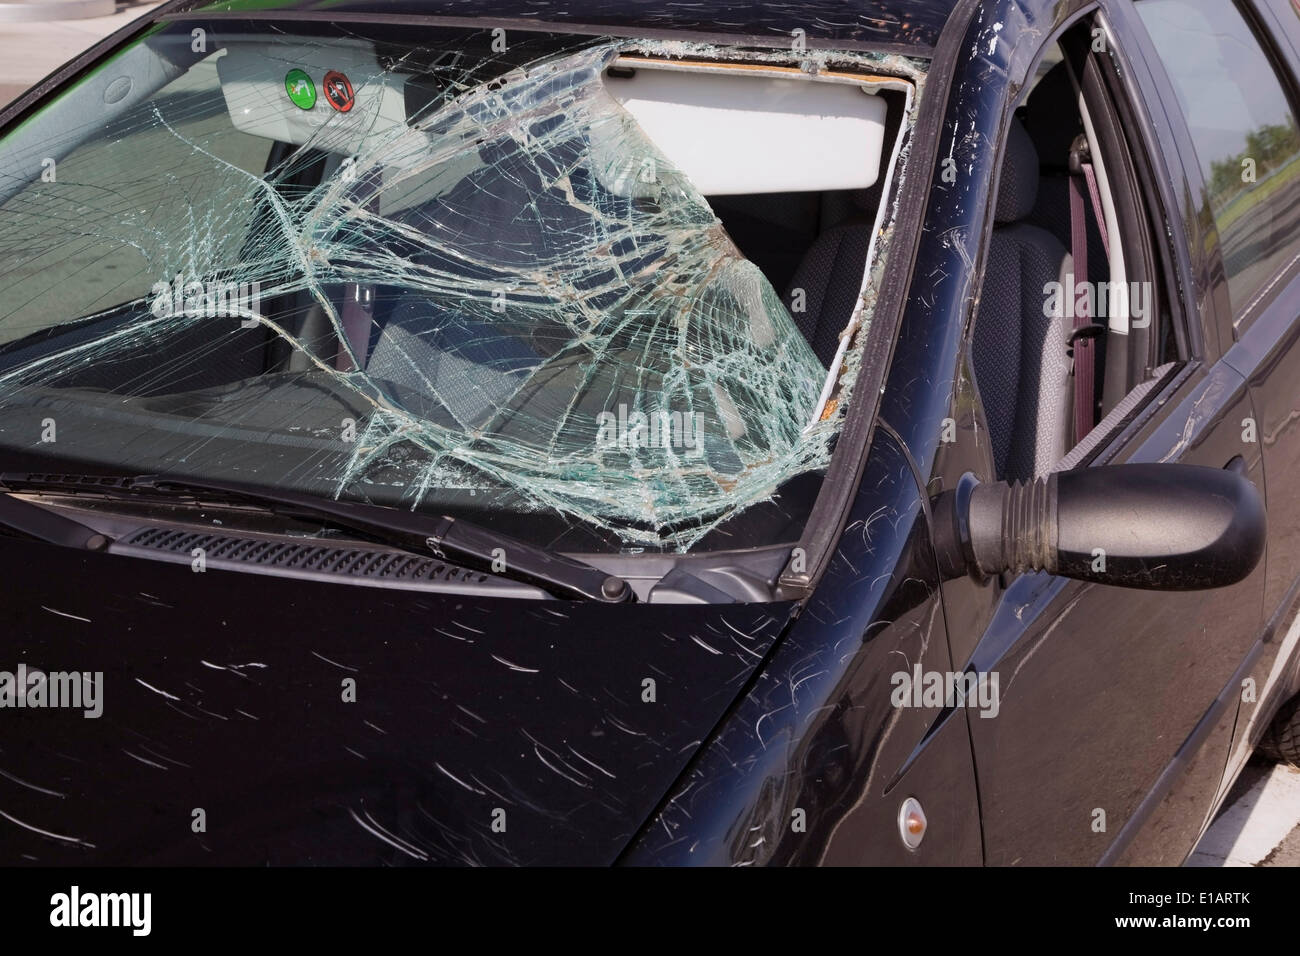 Schwarzen Kleinwagen mit einem Unfall beschädigte Windschutzscheibe, Ungarn  Stockfotografie - Alamy